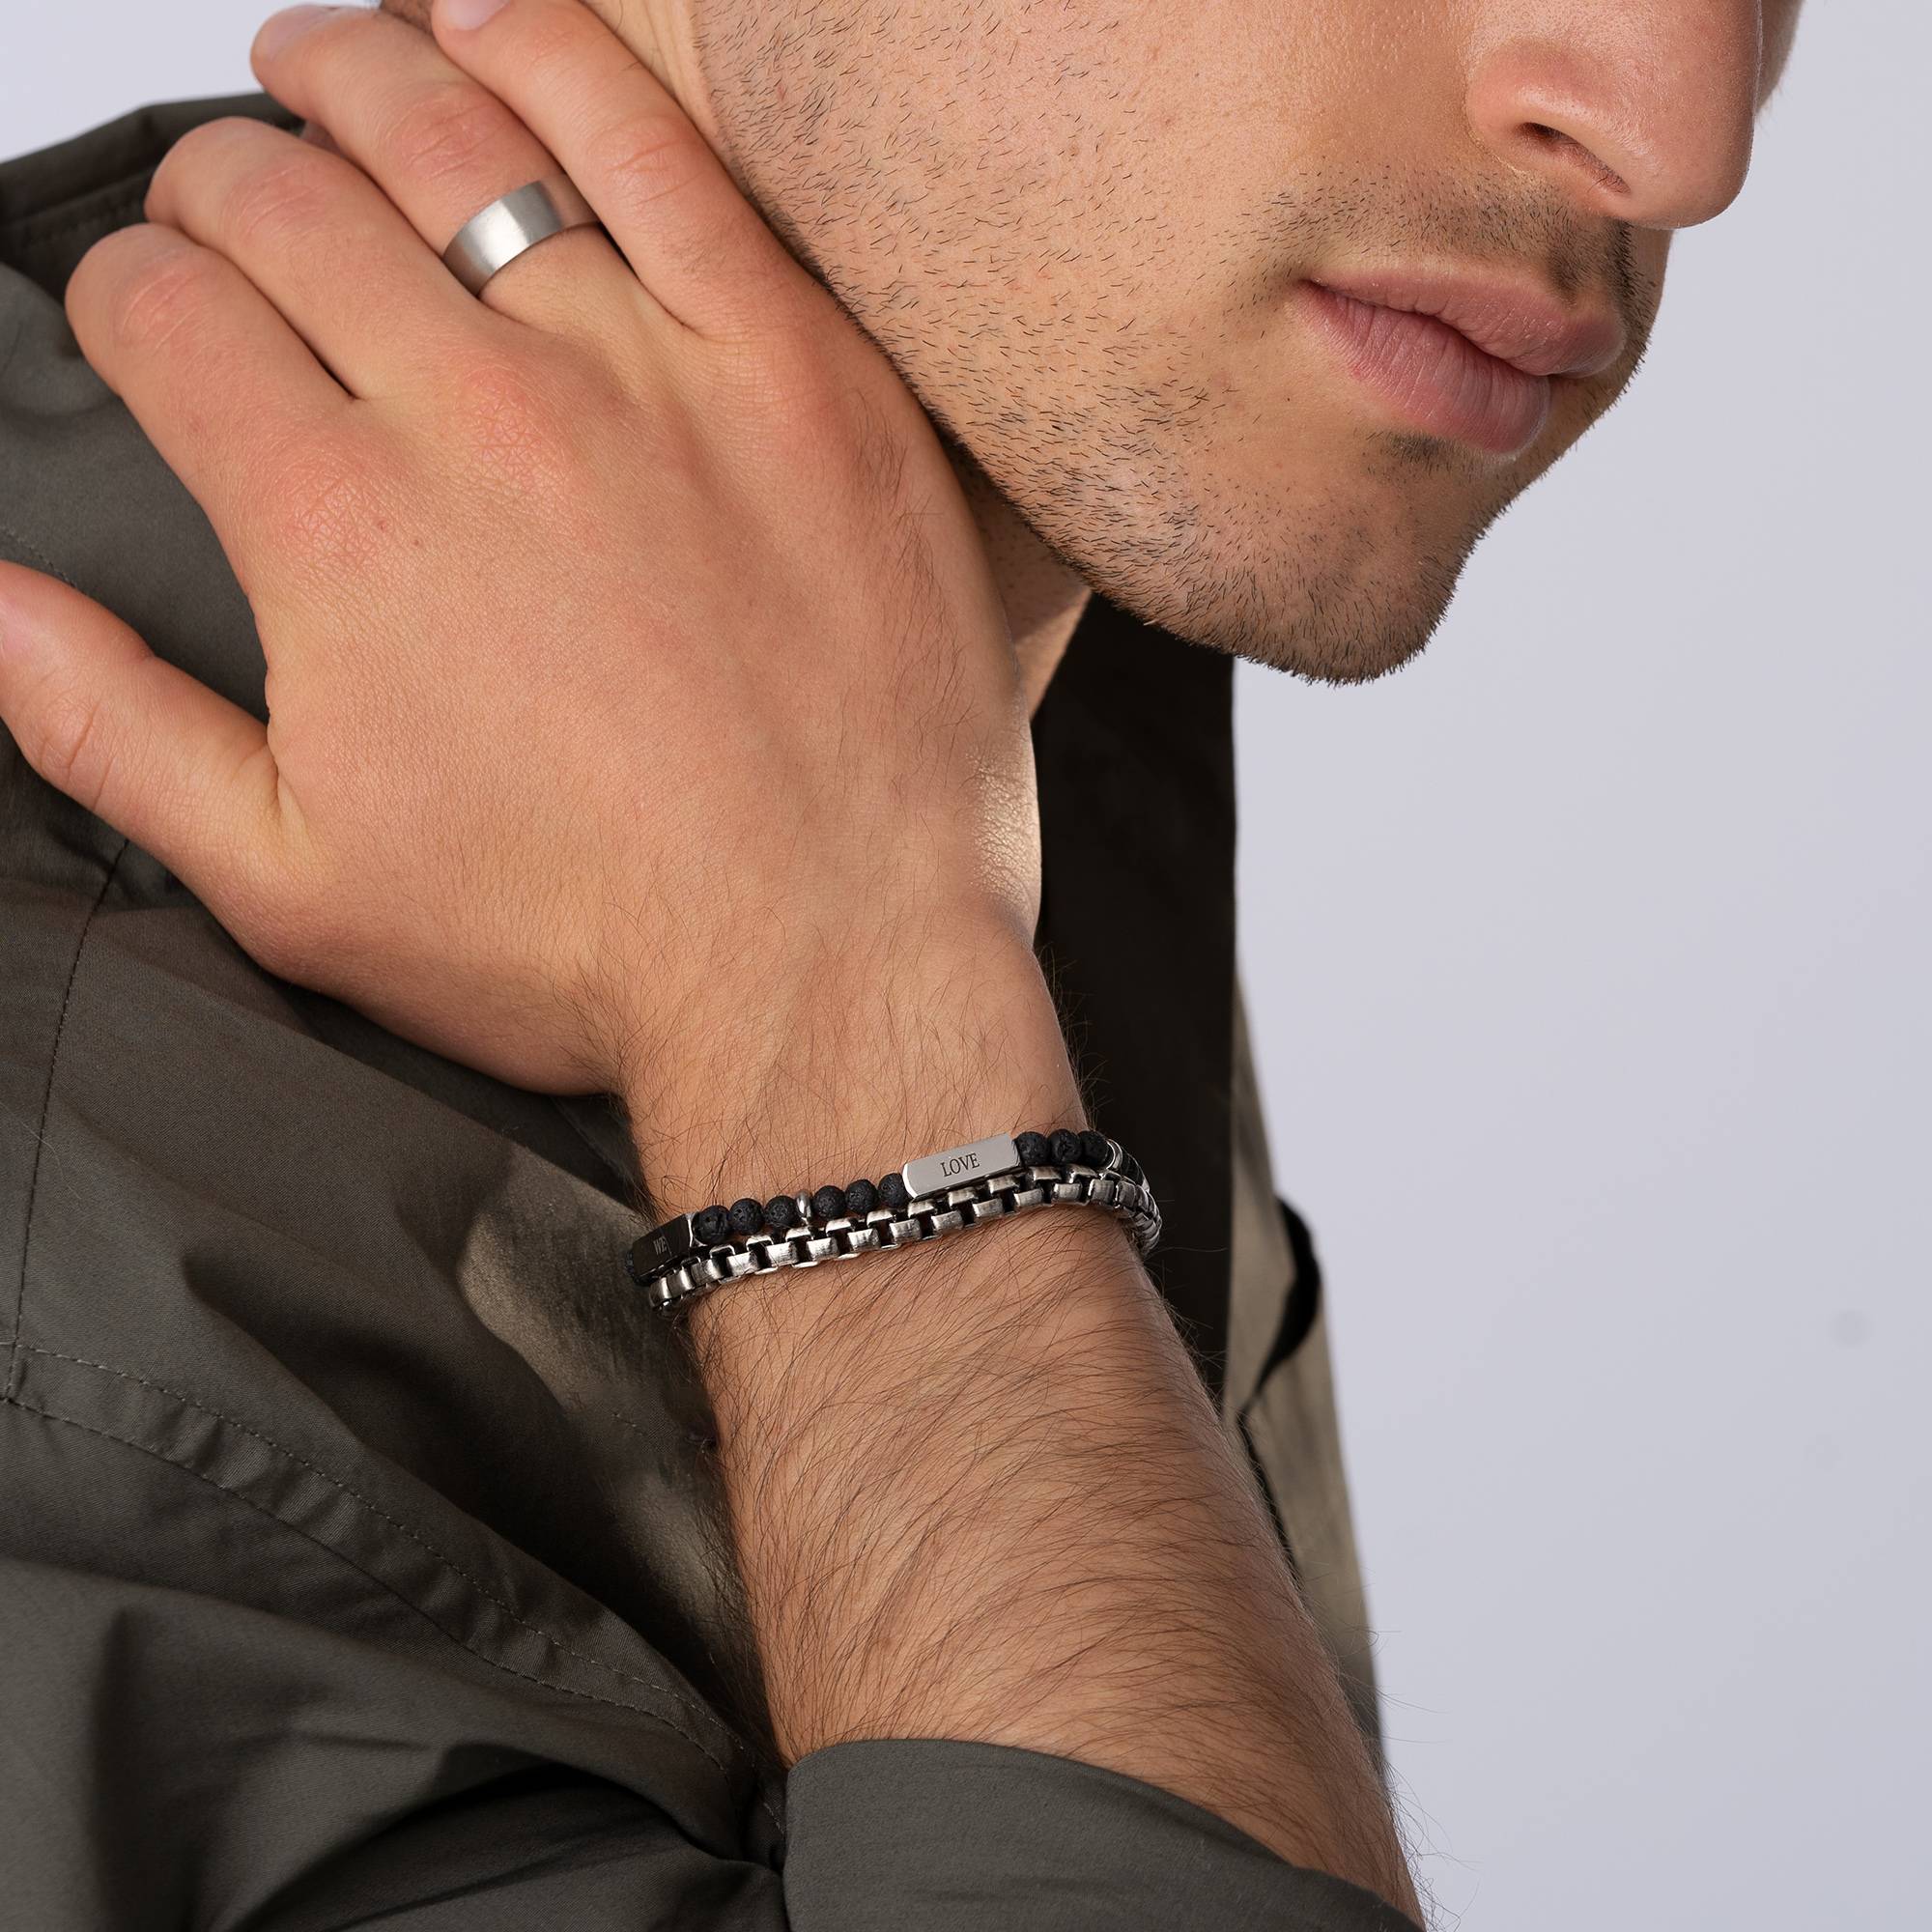 East Coast gepersonaliseerde halfedelstenen kralen armband met zwarte diamanten voor heren-3 Productfoto